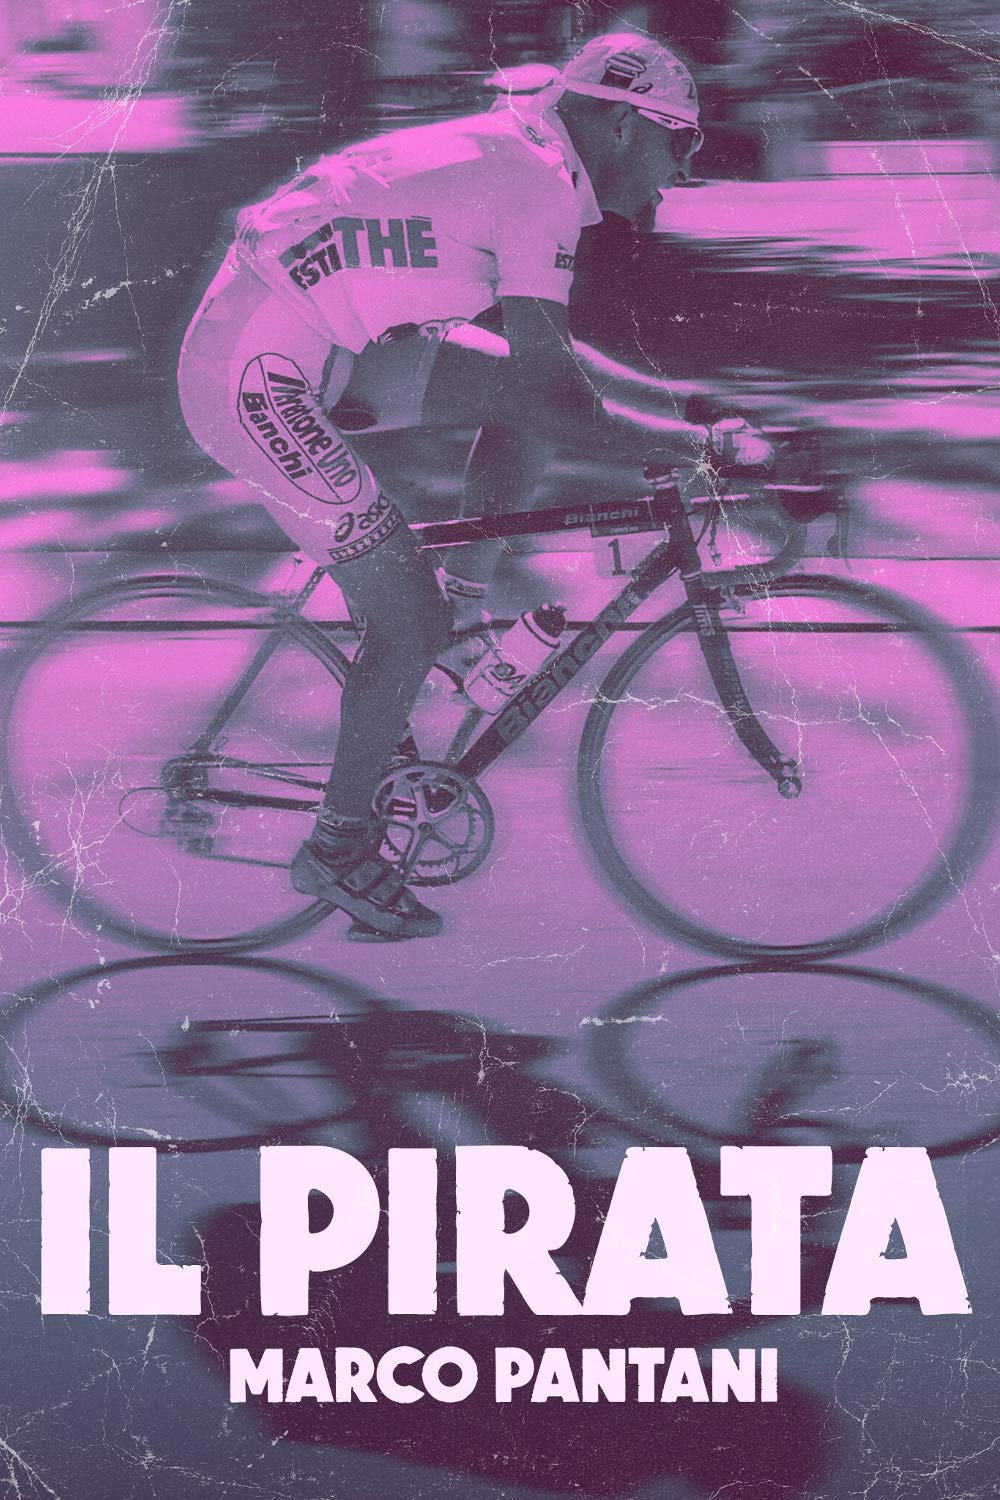 Il pirata – Marco Pantani (2007)